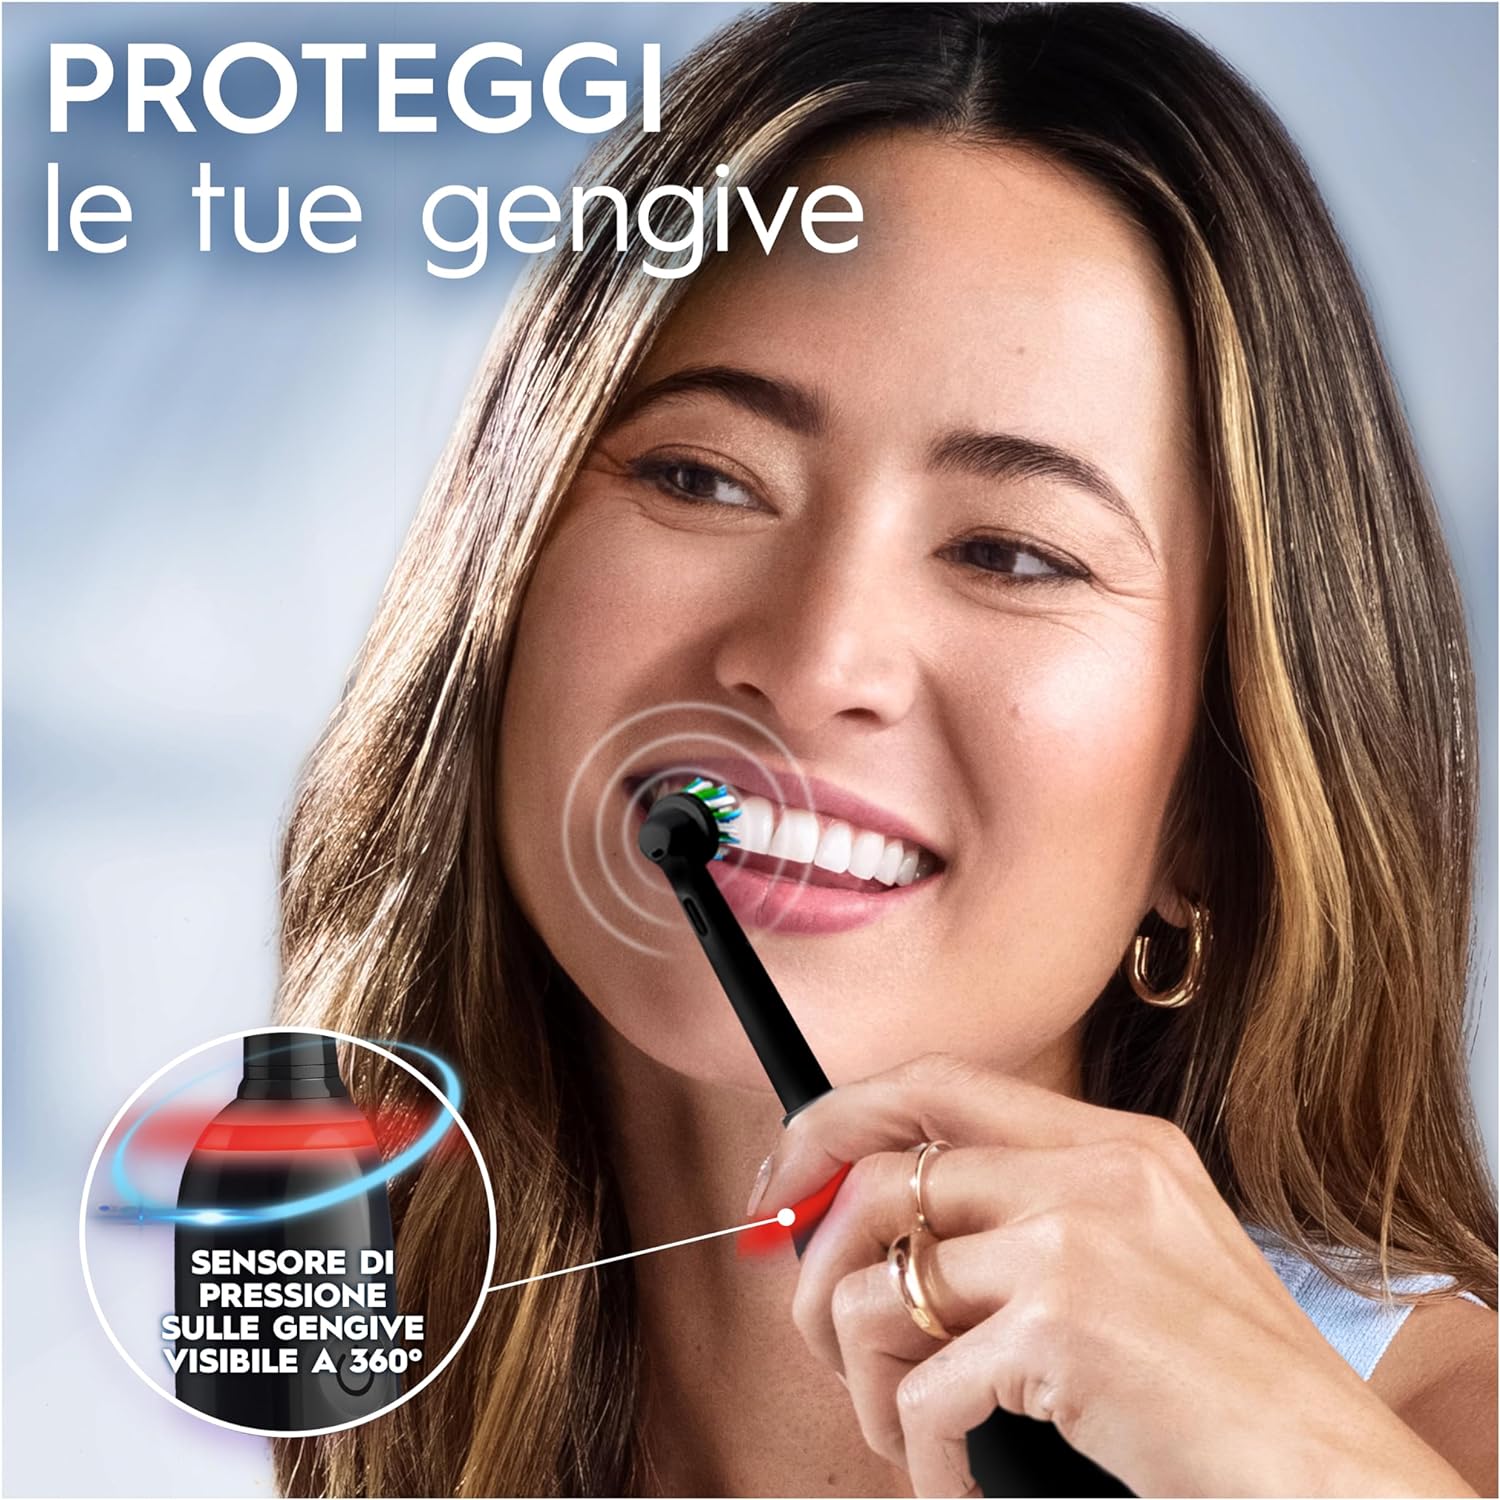 Kit per la pulizia dei denti ovunque a soli 44 euro: spazzolino elettrico  Oral-B + testina di riserva + Custodia viaggio! - Webnews